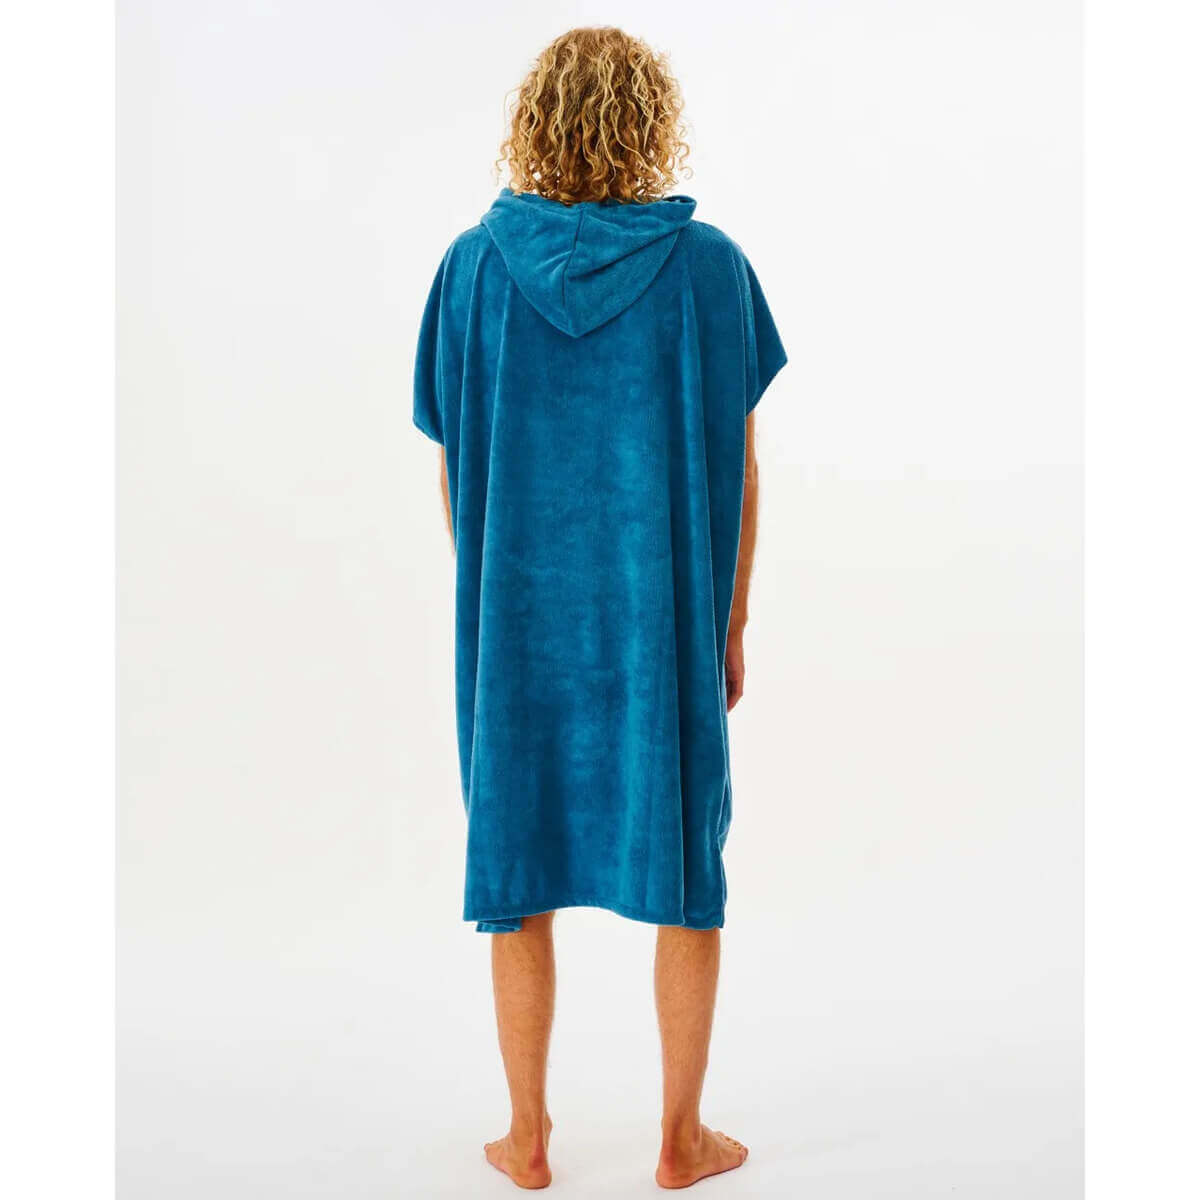 Ponczo Ripcurl - Mix Up Hooded Towel - męskie - ocean - CTWAH9 - 3